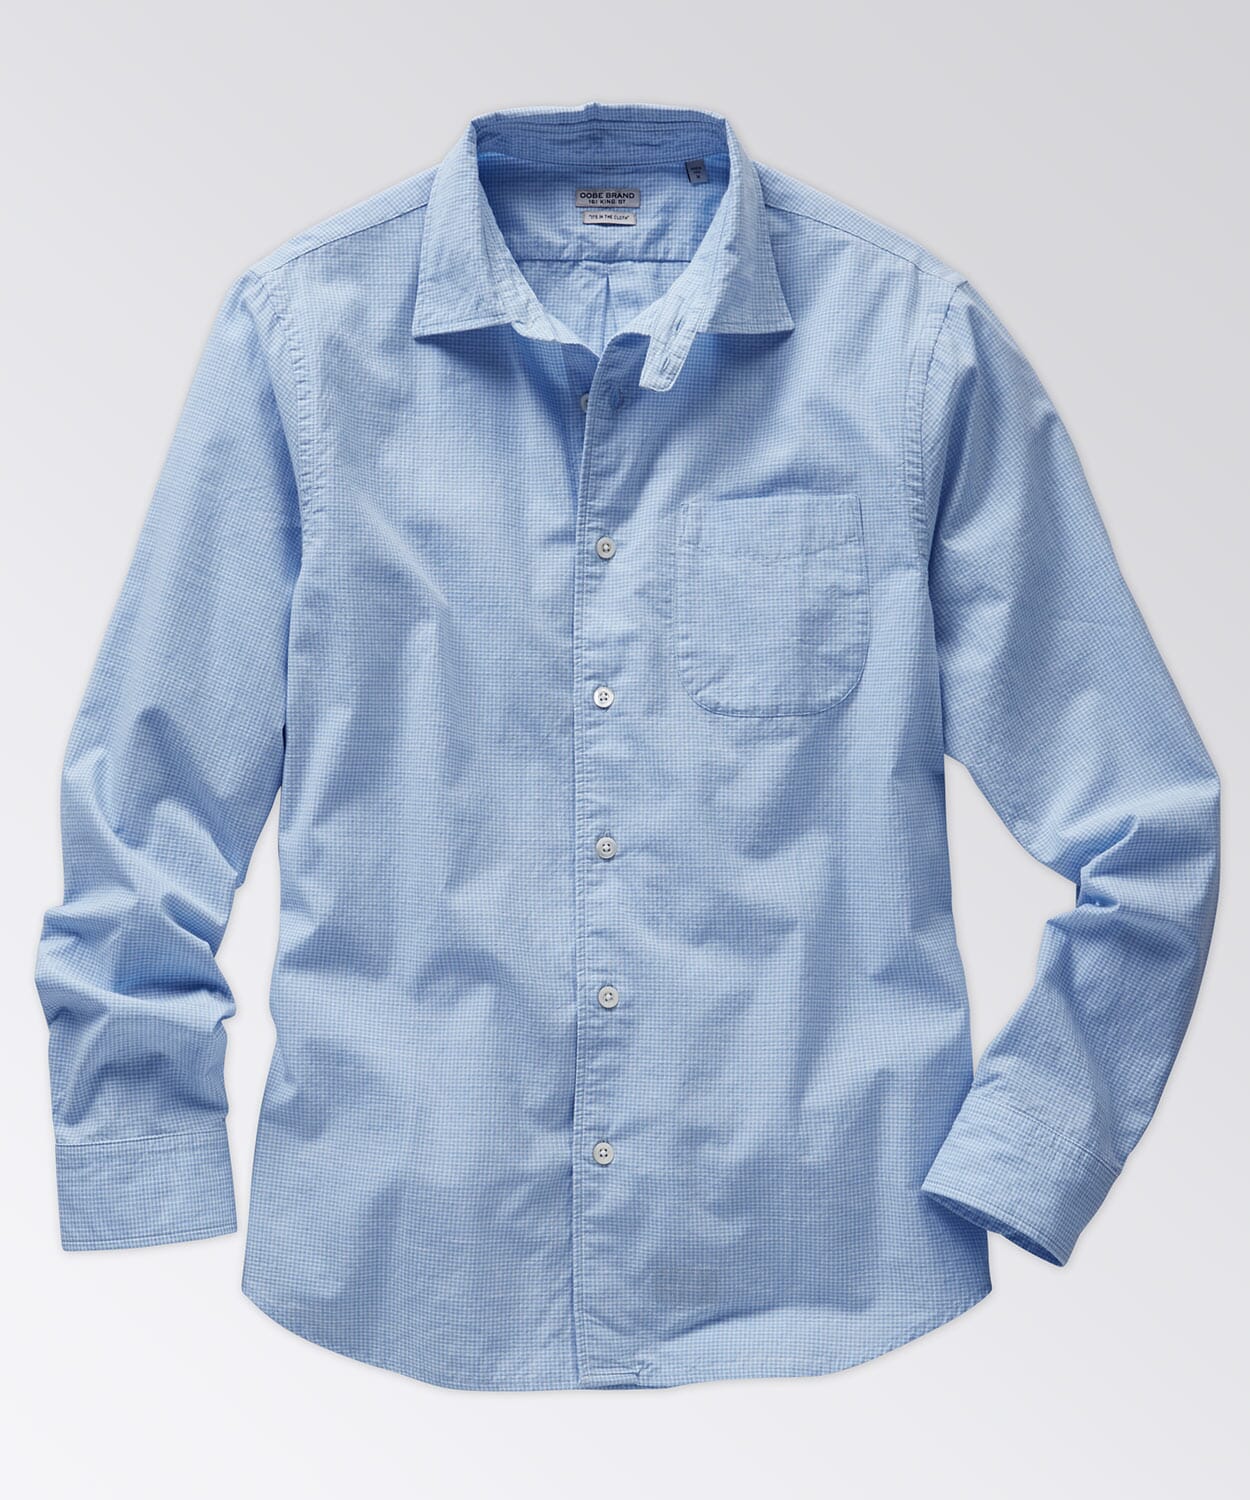 Clarke Shirt Button Downs OOBE BRAND Light Blue White Gingham S 